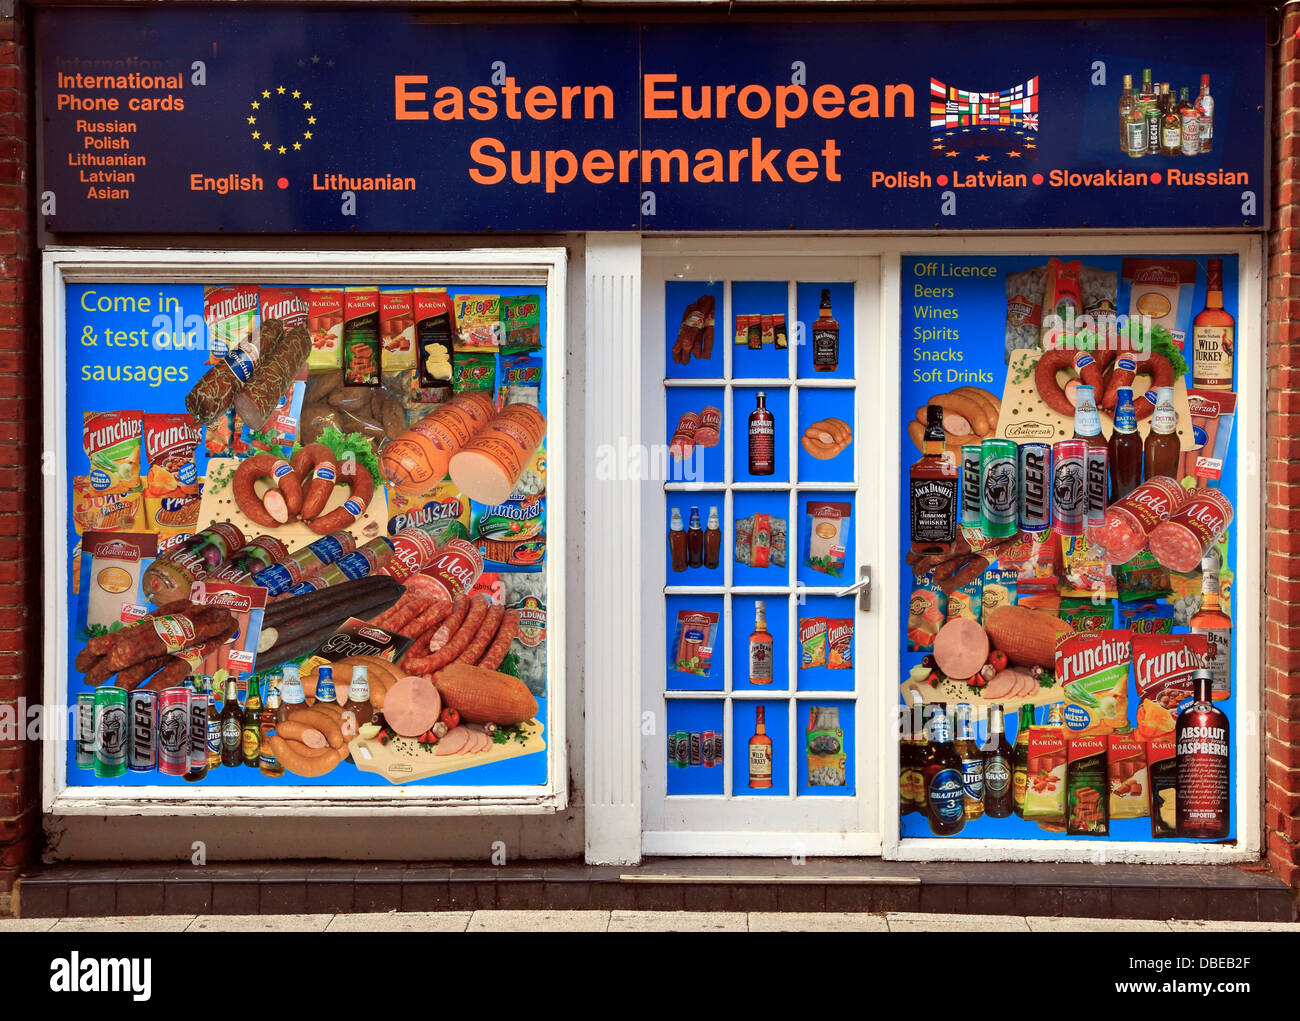 Östlichen europäischen Supermarkt, Kings Lynn, Norfolk, England UK Osten europäische Einwanderer Einwanderung dienen shop Spezialität Stockfoto